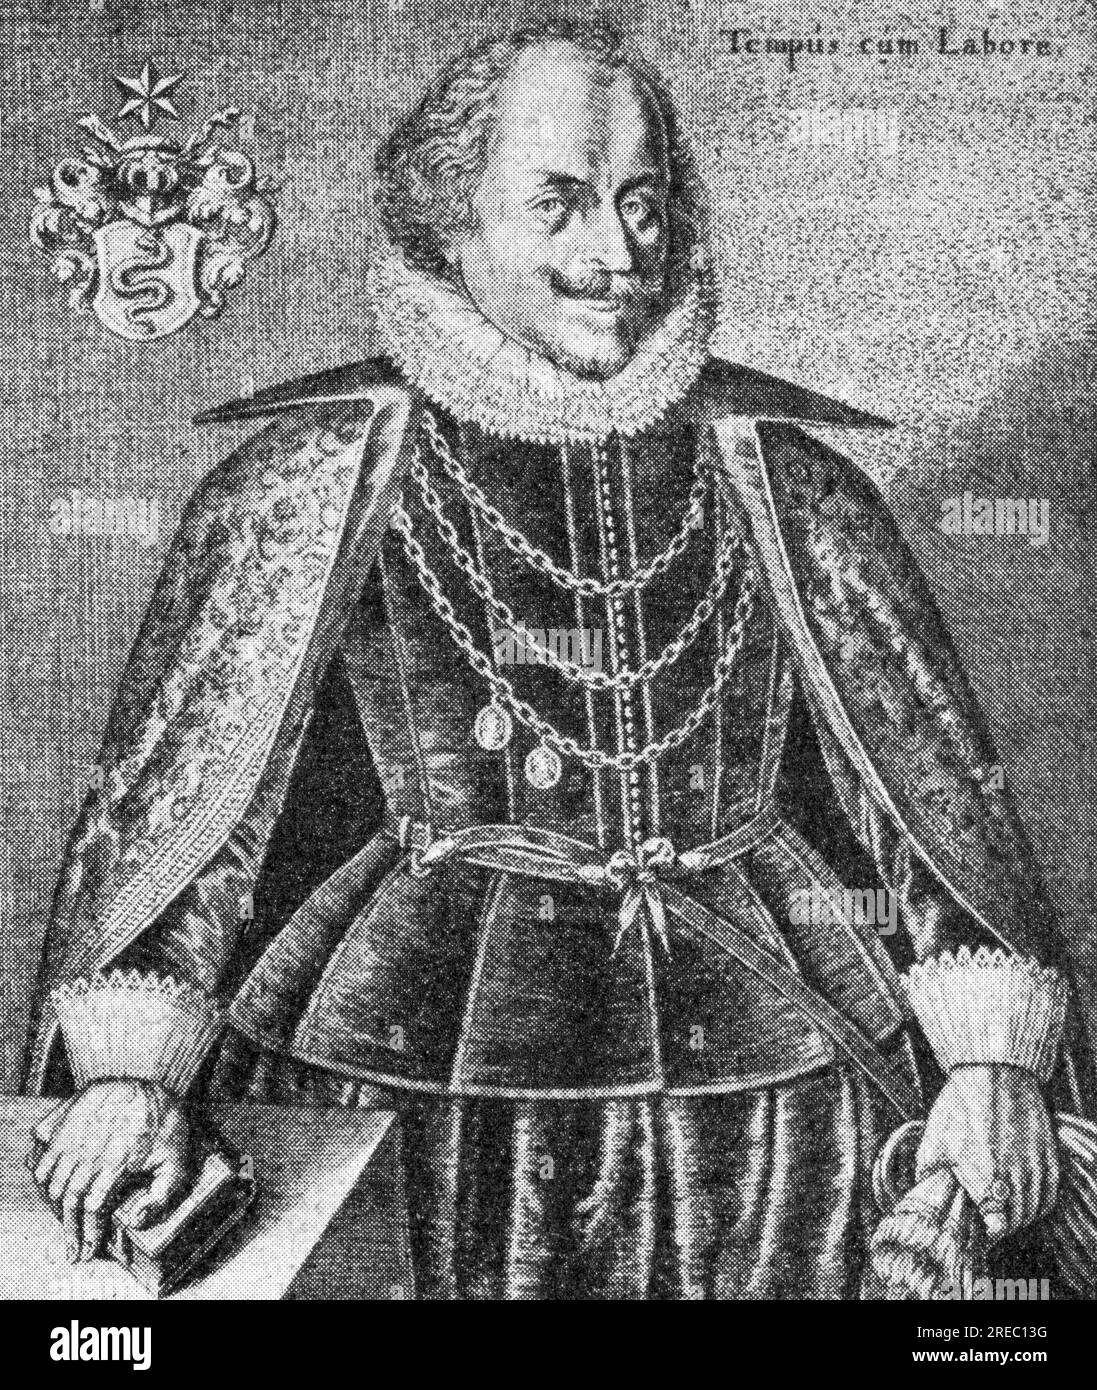 Weickard, Arnold, 1578 - 1645, deutscher Arzt, Gravur, 17TH. JAHRHUNDERT, DAS URHEBERRECHT DES KÜNSTLERS MUSS NICHT GEKLÄRT WERDEN Stockfoto